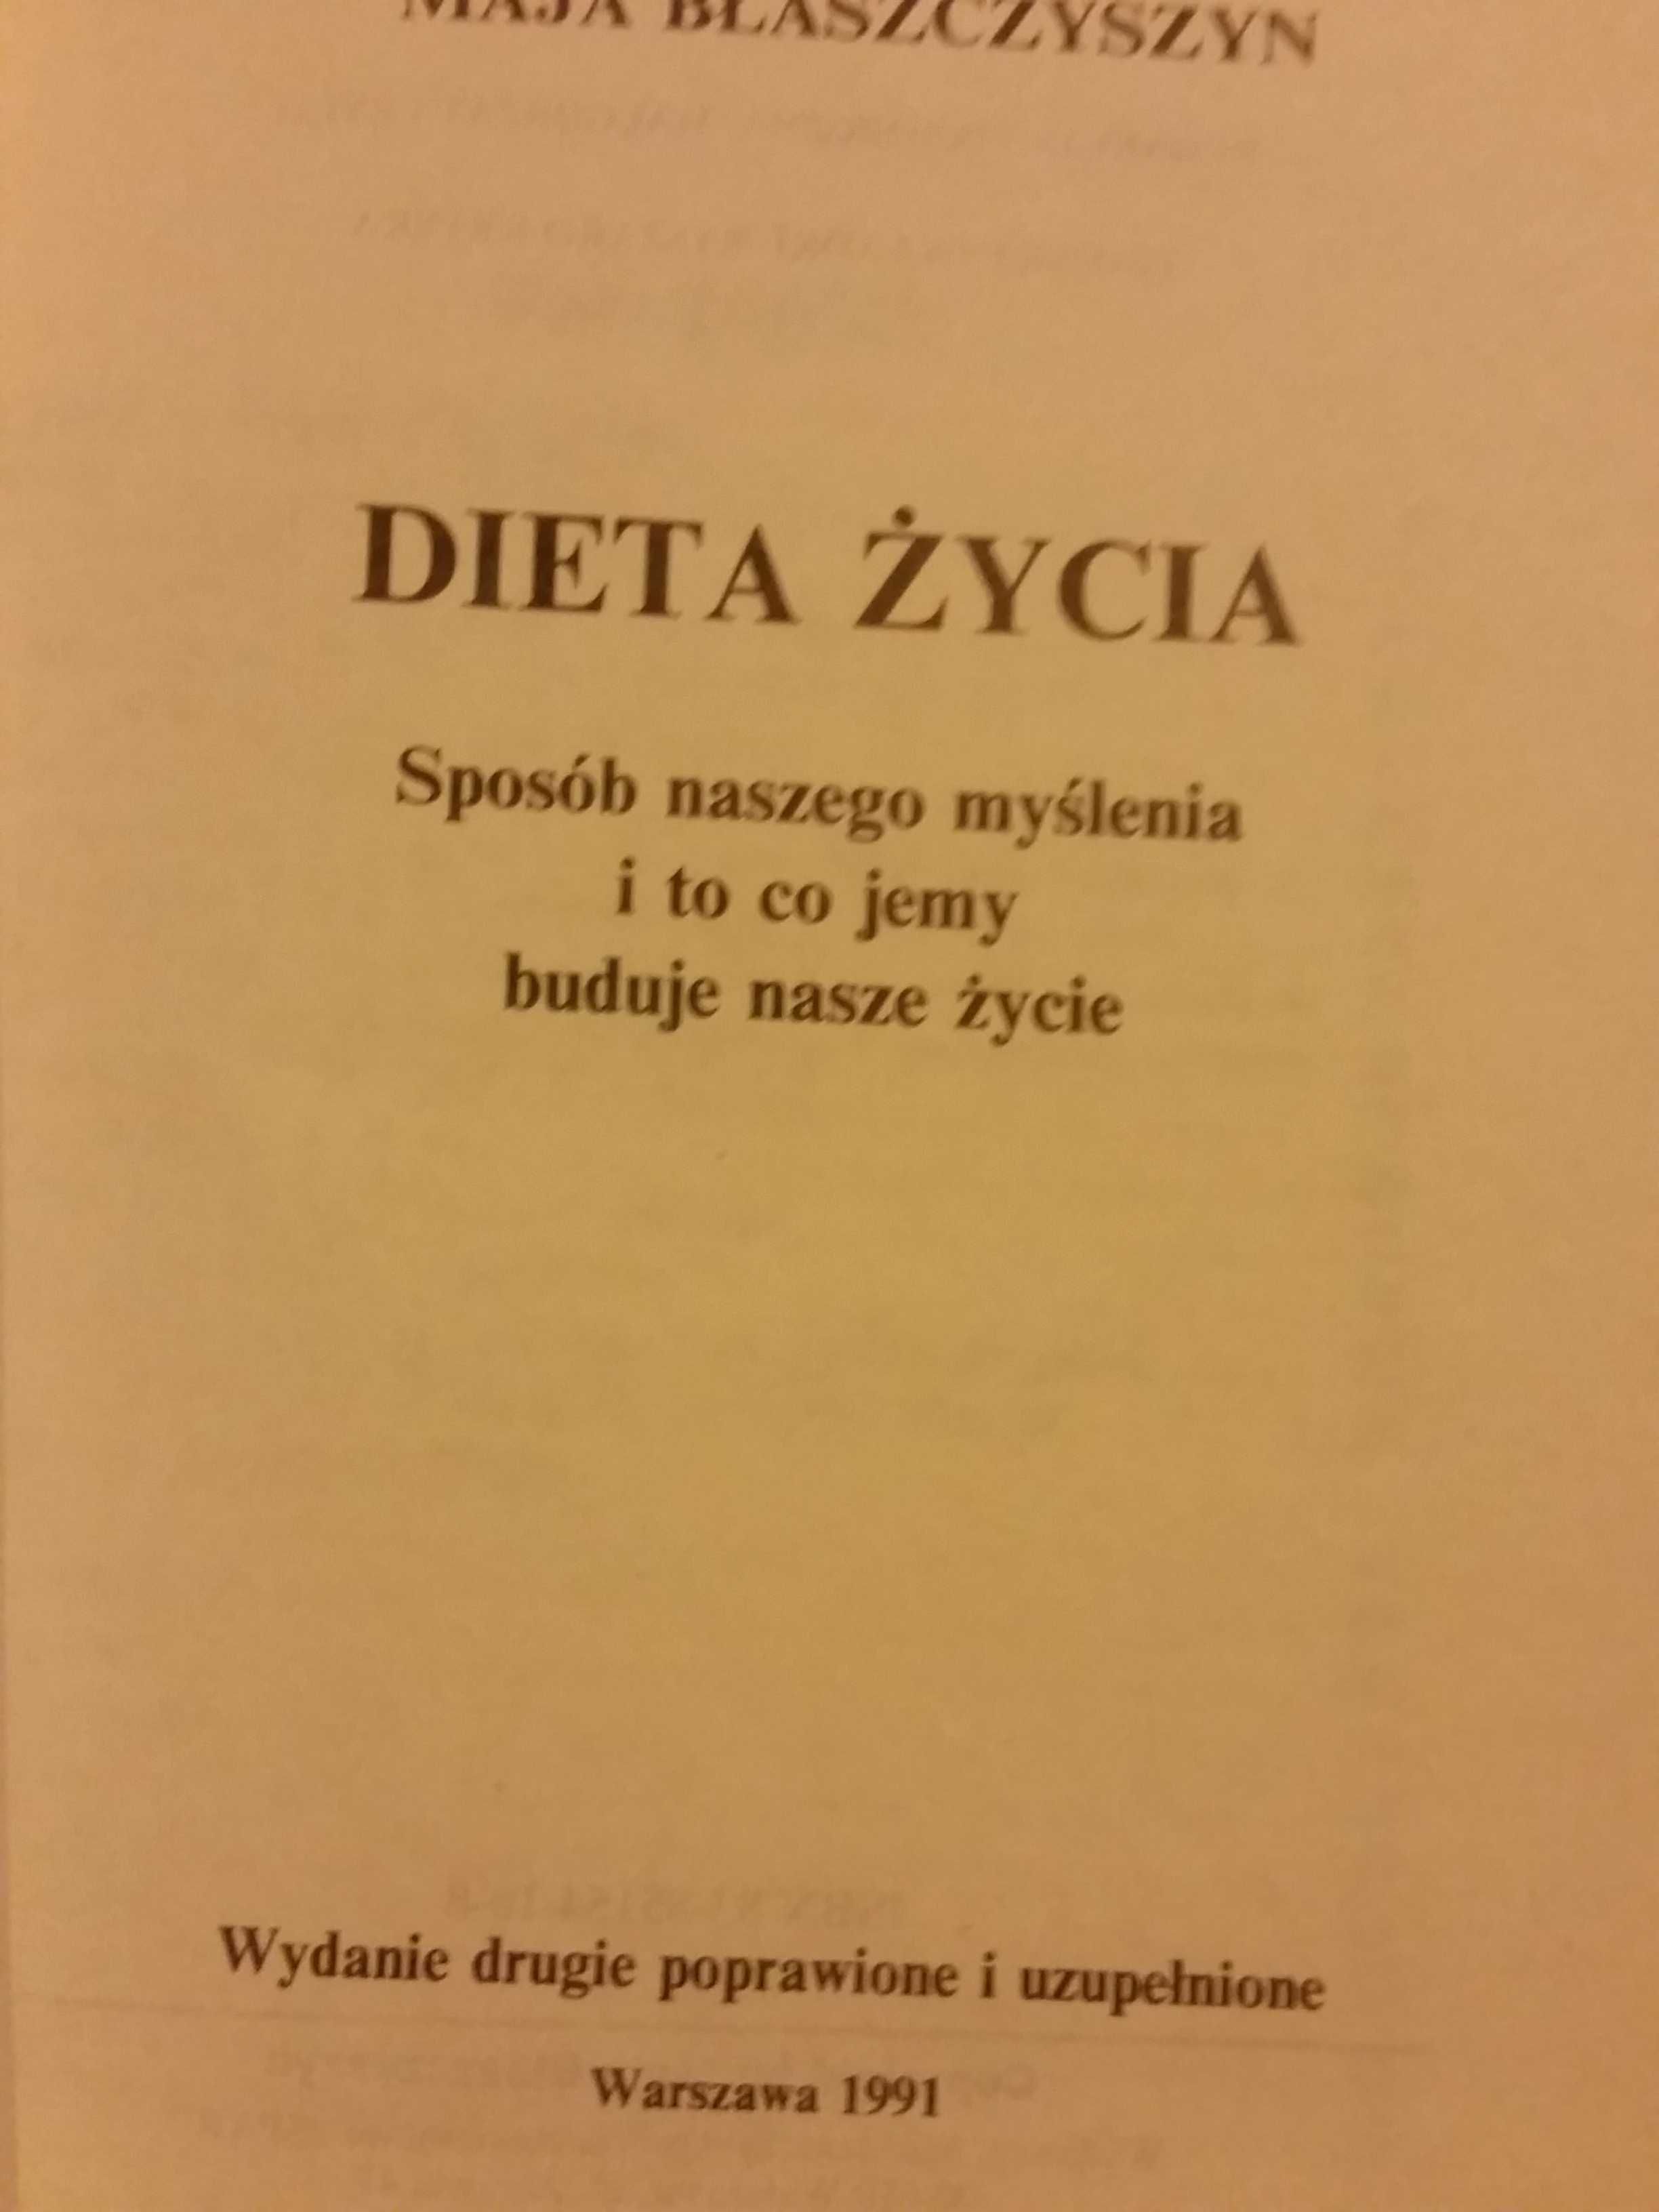 Dieta życia Maja Błaszczyszyn książka